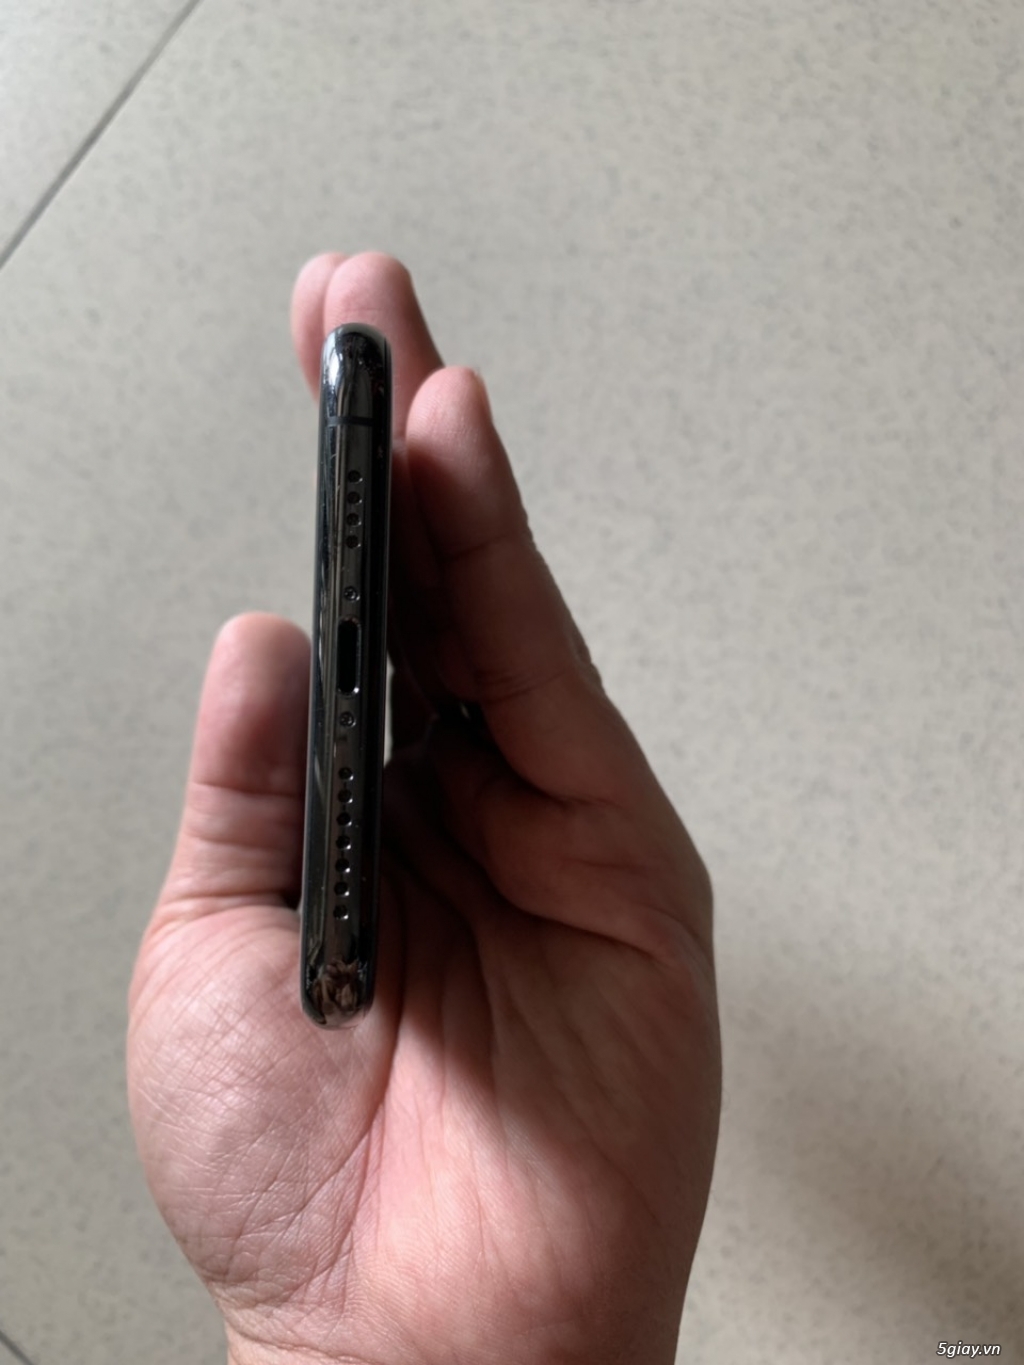 Bán iphone XS Max 256Gb quốc tế màu Black, hàng Mỹ